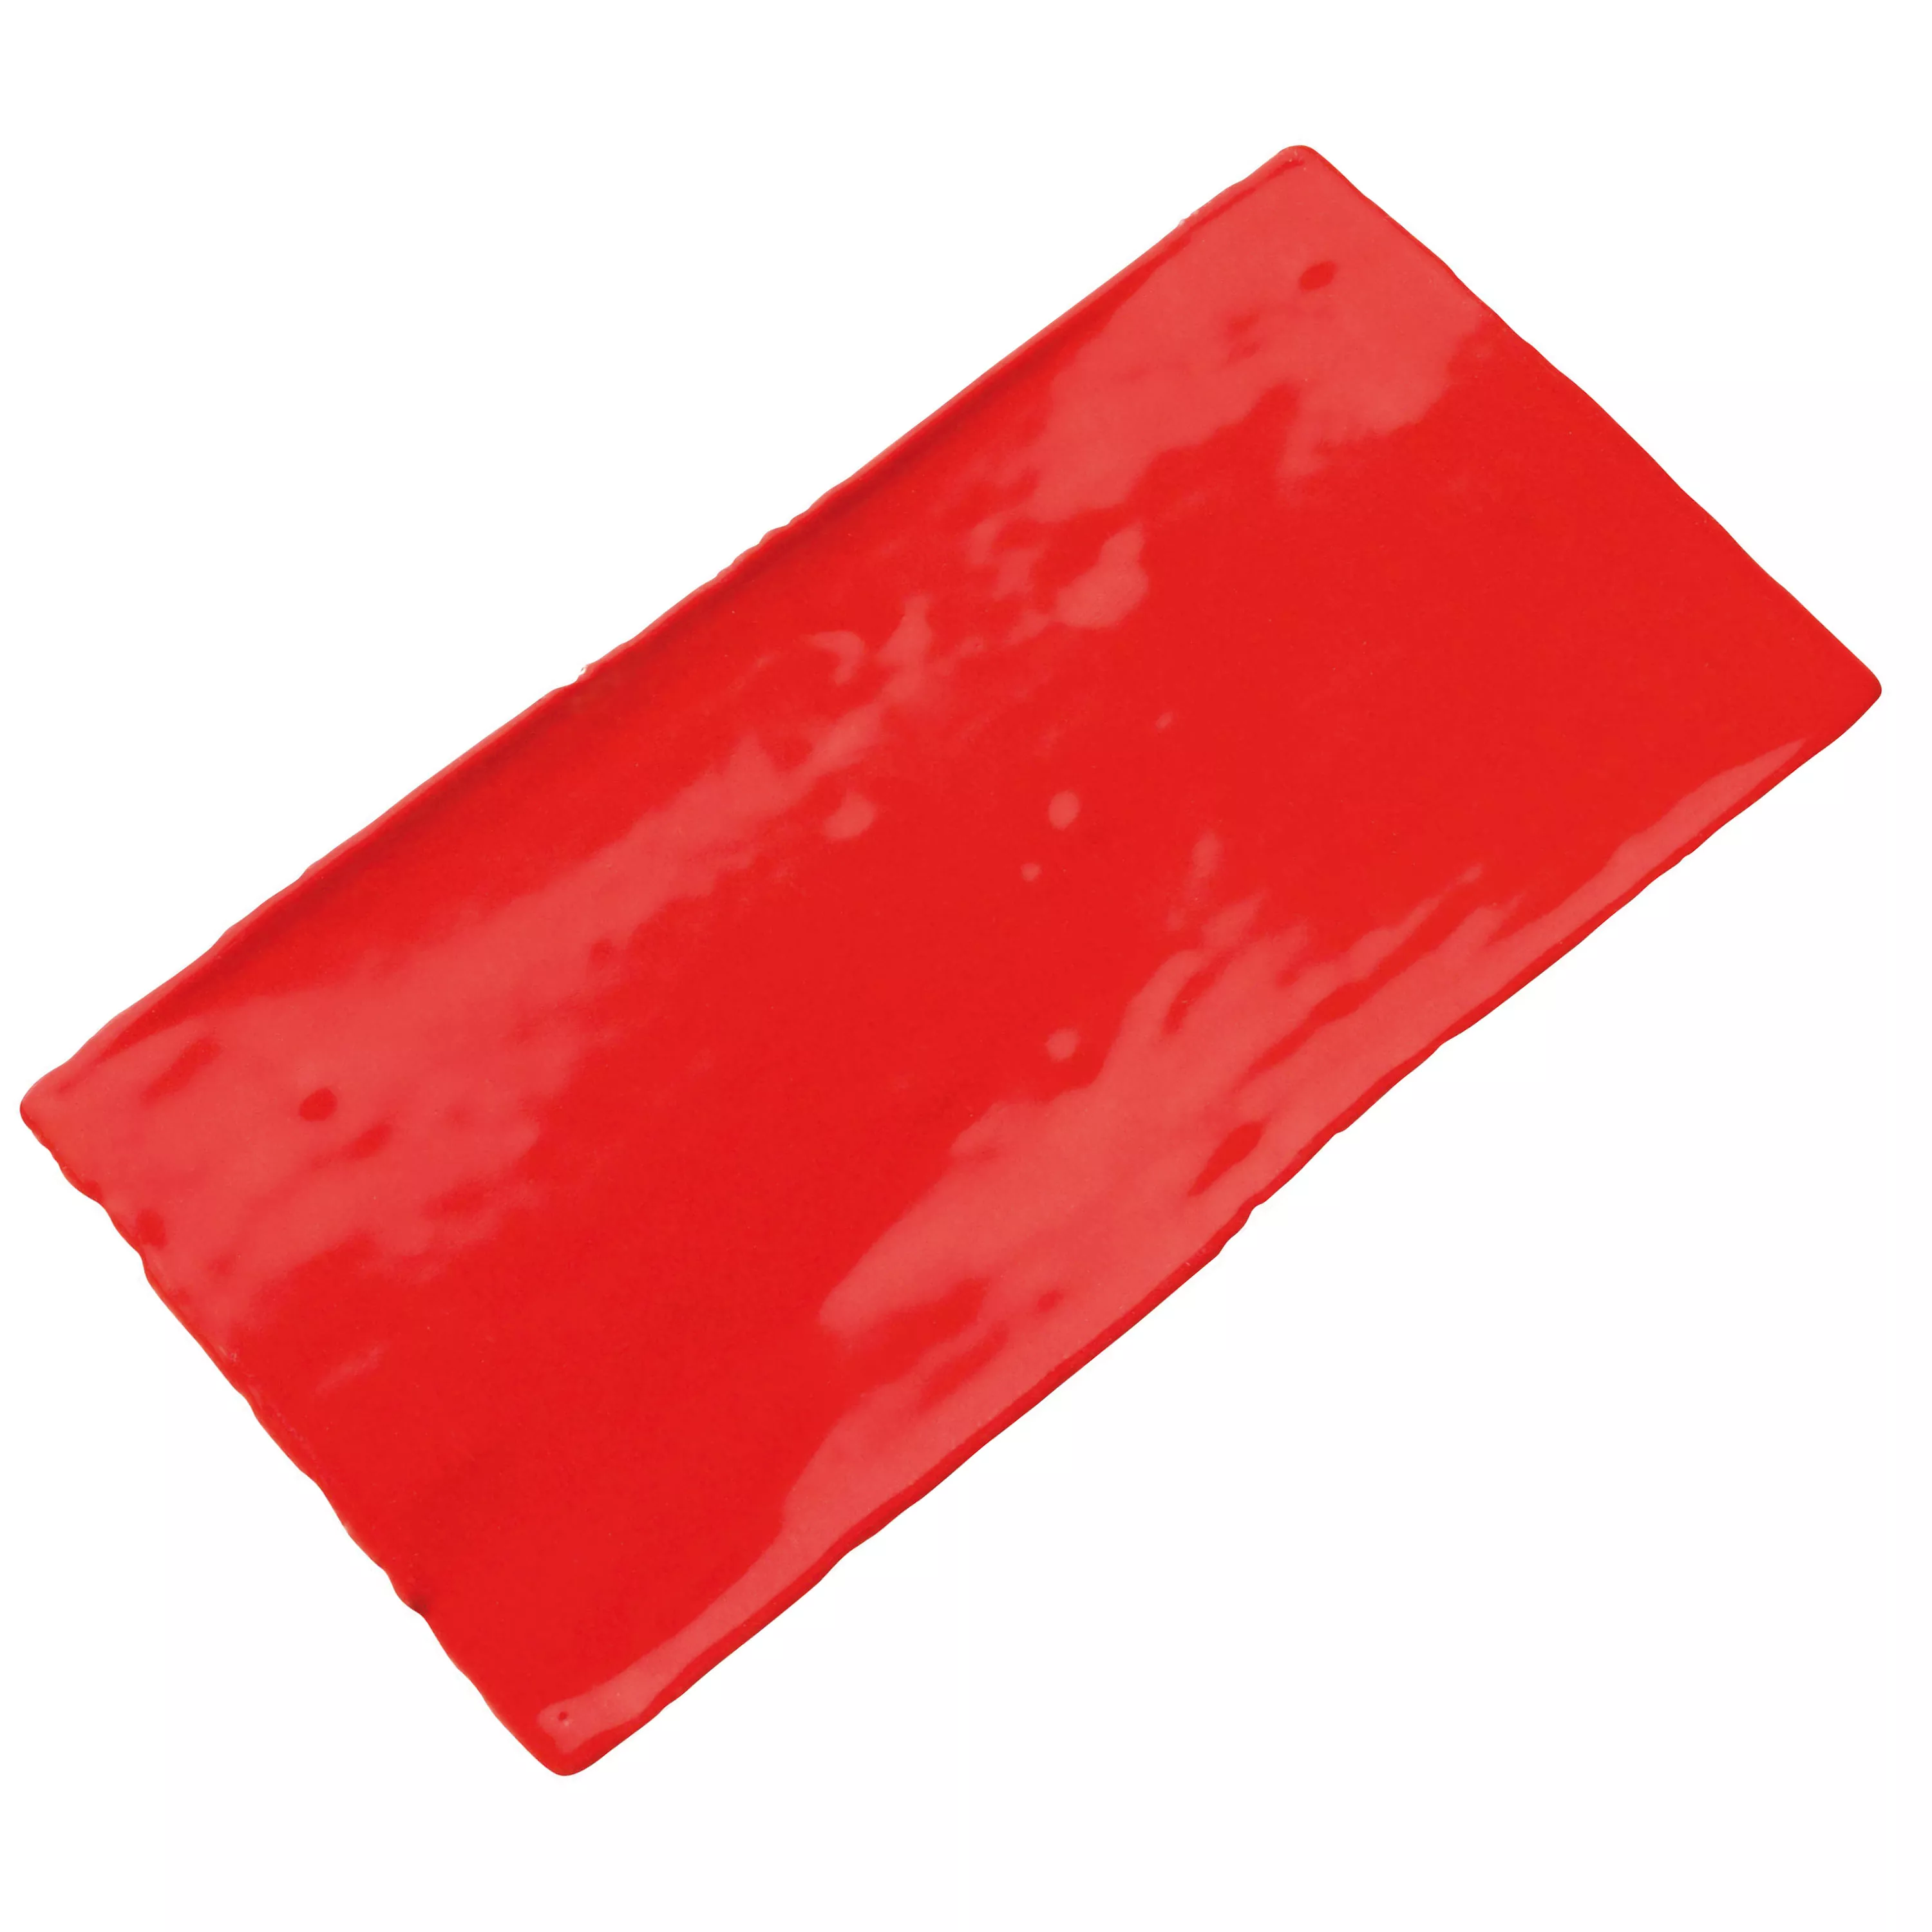 Revestimiento Algier Hecho A Mano 7,5x15cm Rojo